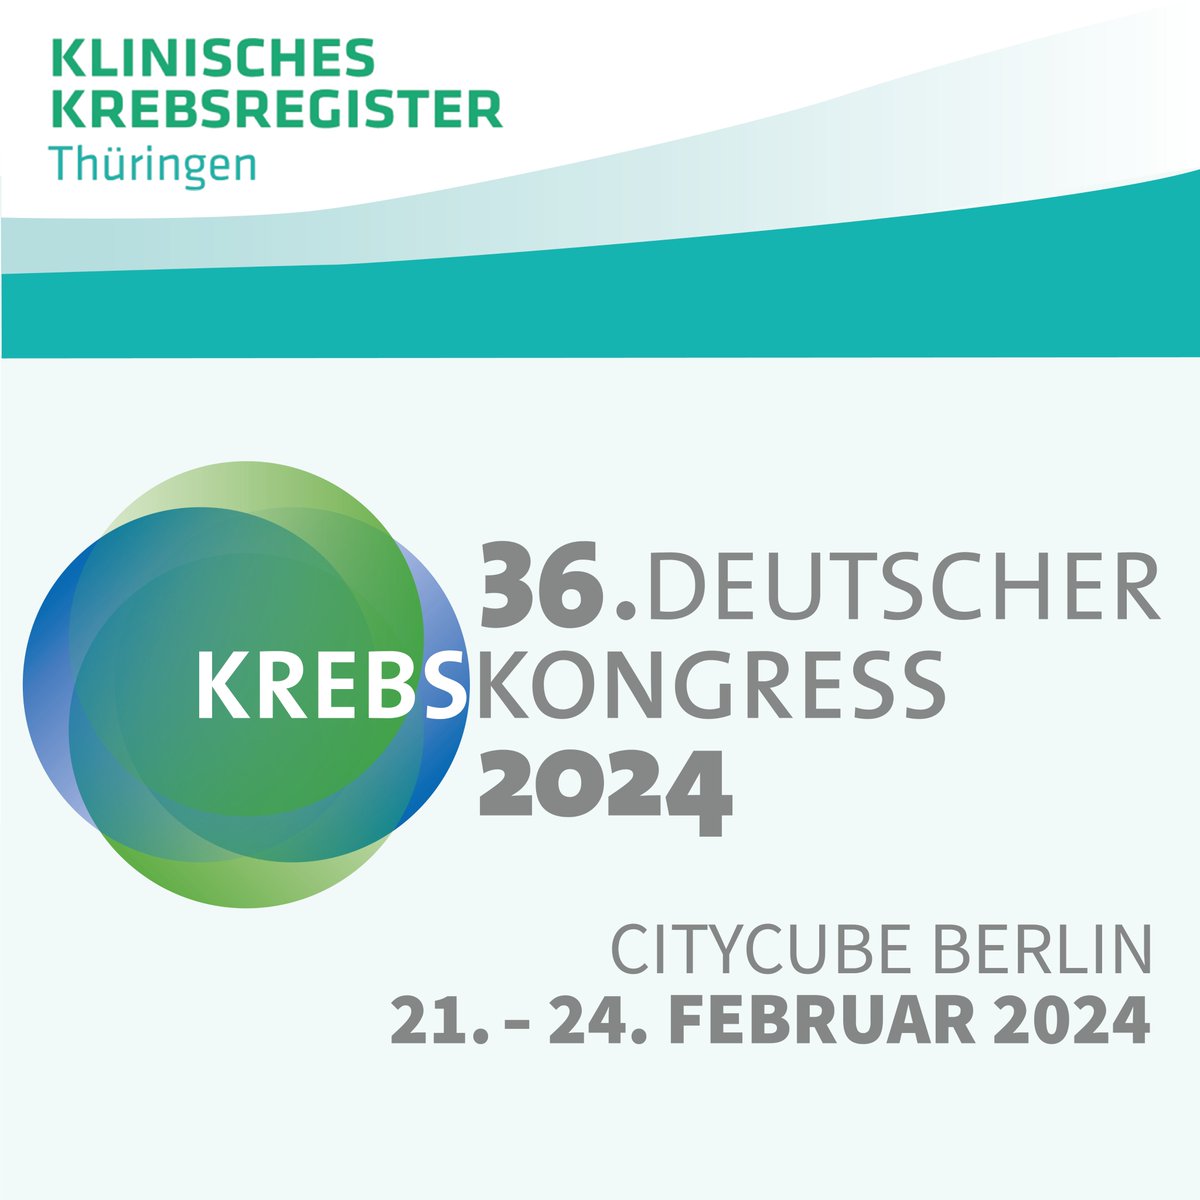 Wir freuen uns sehr, diese Woche am 36. Deutschen Krebskongress in Berlin teilnehmen zu können! 👏

🙏Wir sind dankbar für die Möglichkeit, an diesem wichtigen Event teilnehmen zu können und sind gespannt! 
#dkk2024 #Krebsforschung #GemeinsamgegenKrebs #zkkr #Qualitätssicherung